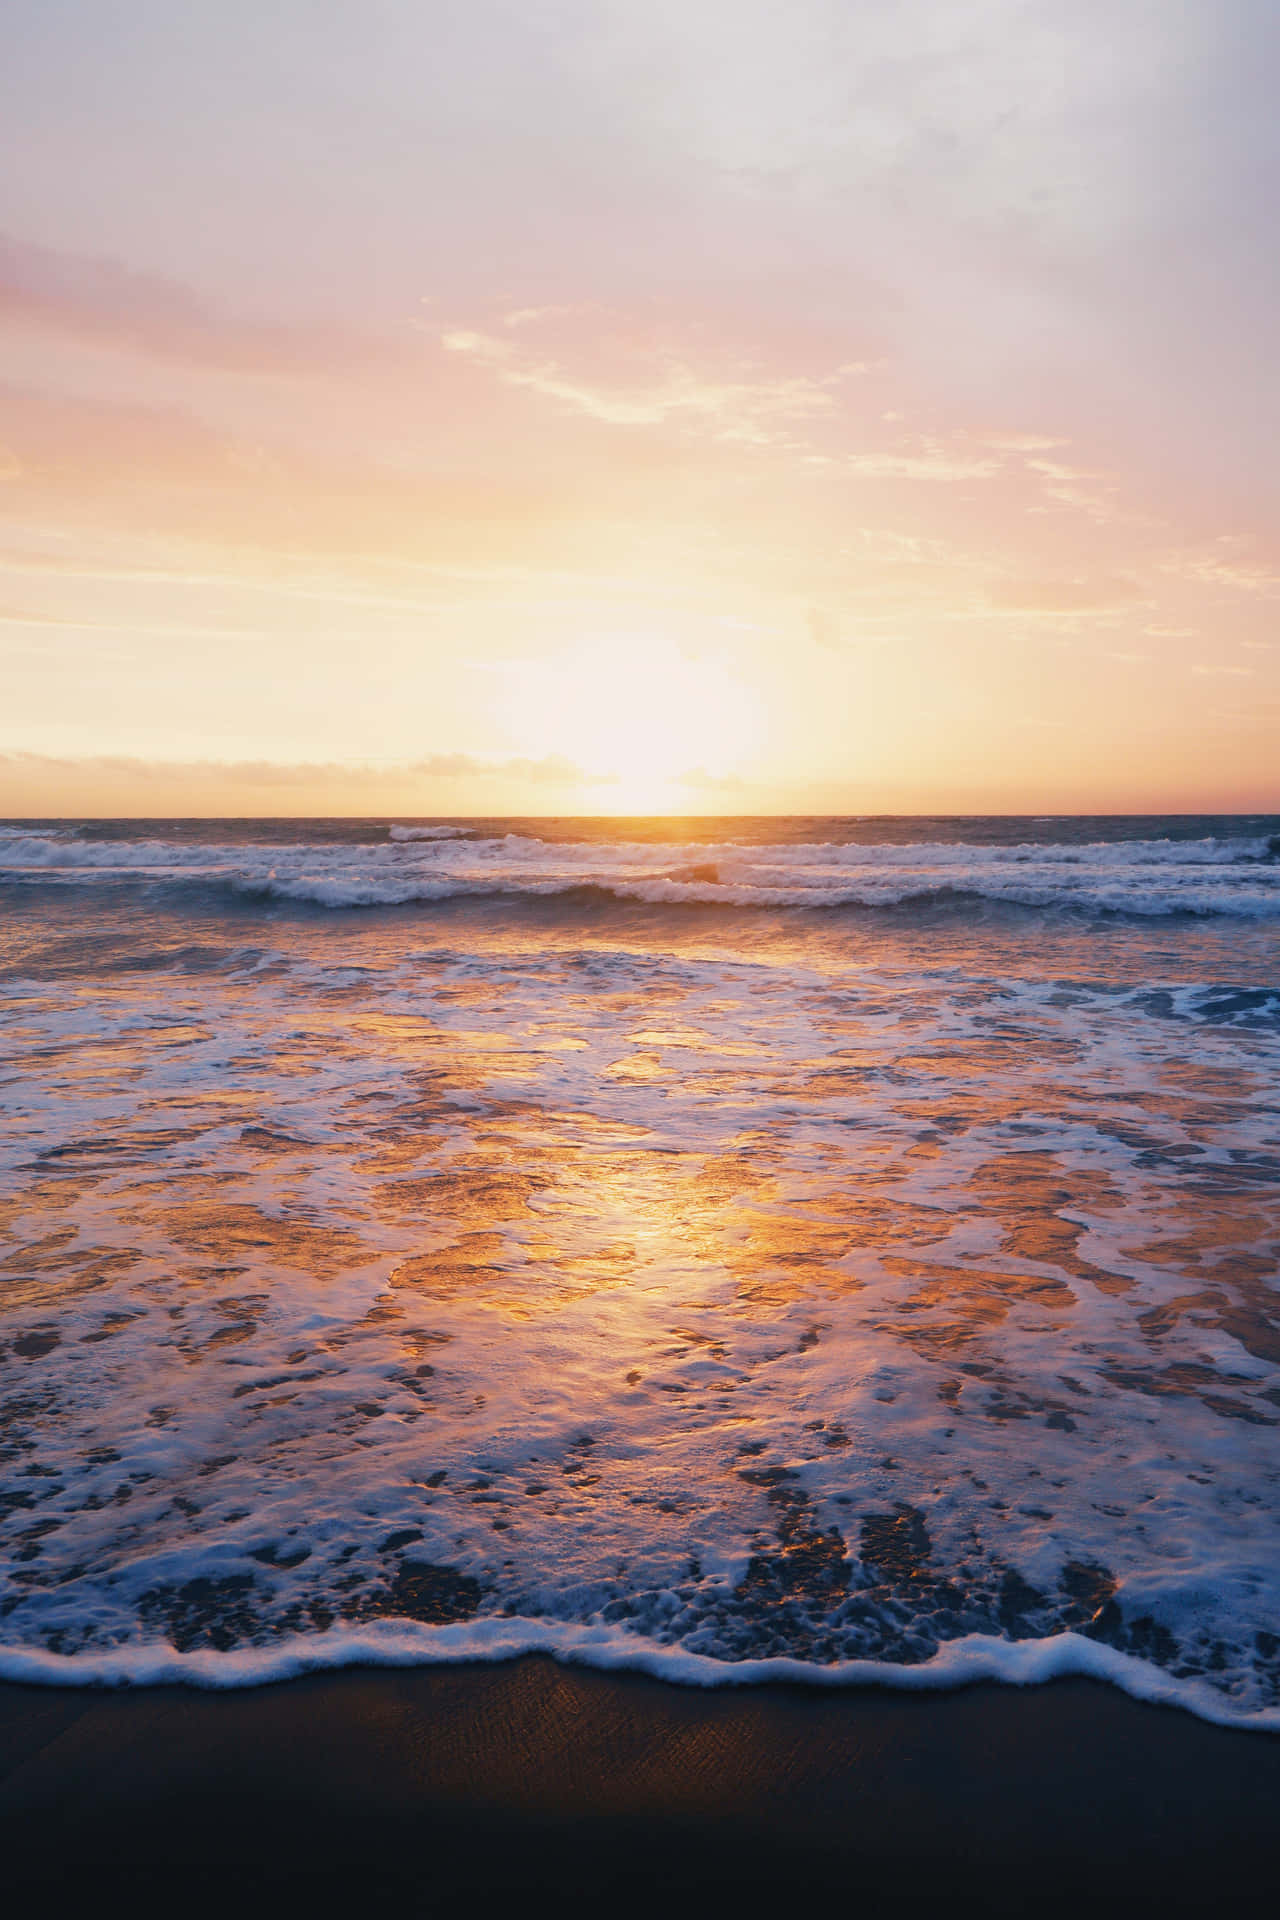 Tag et øjeblik og nyd fredelig strand solnedgang. Wallpaper